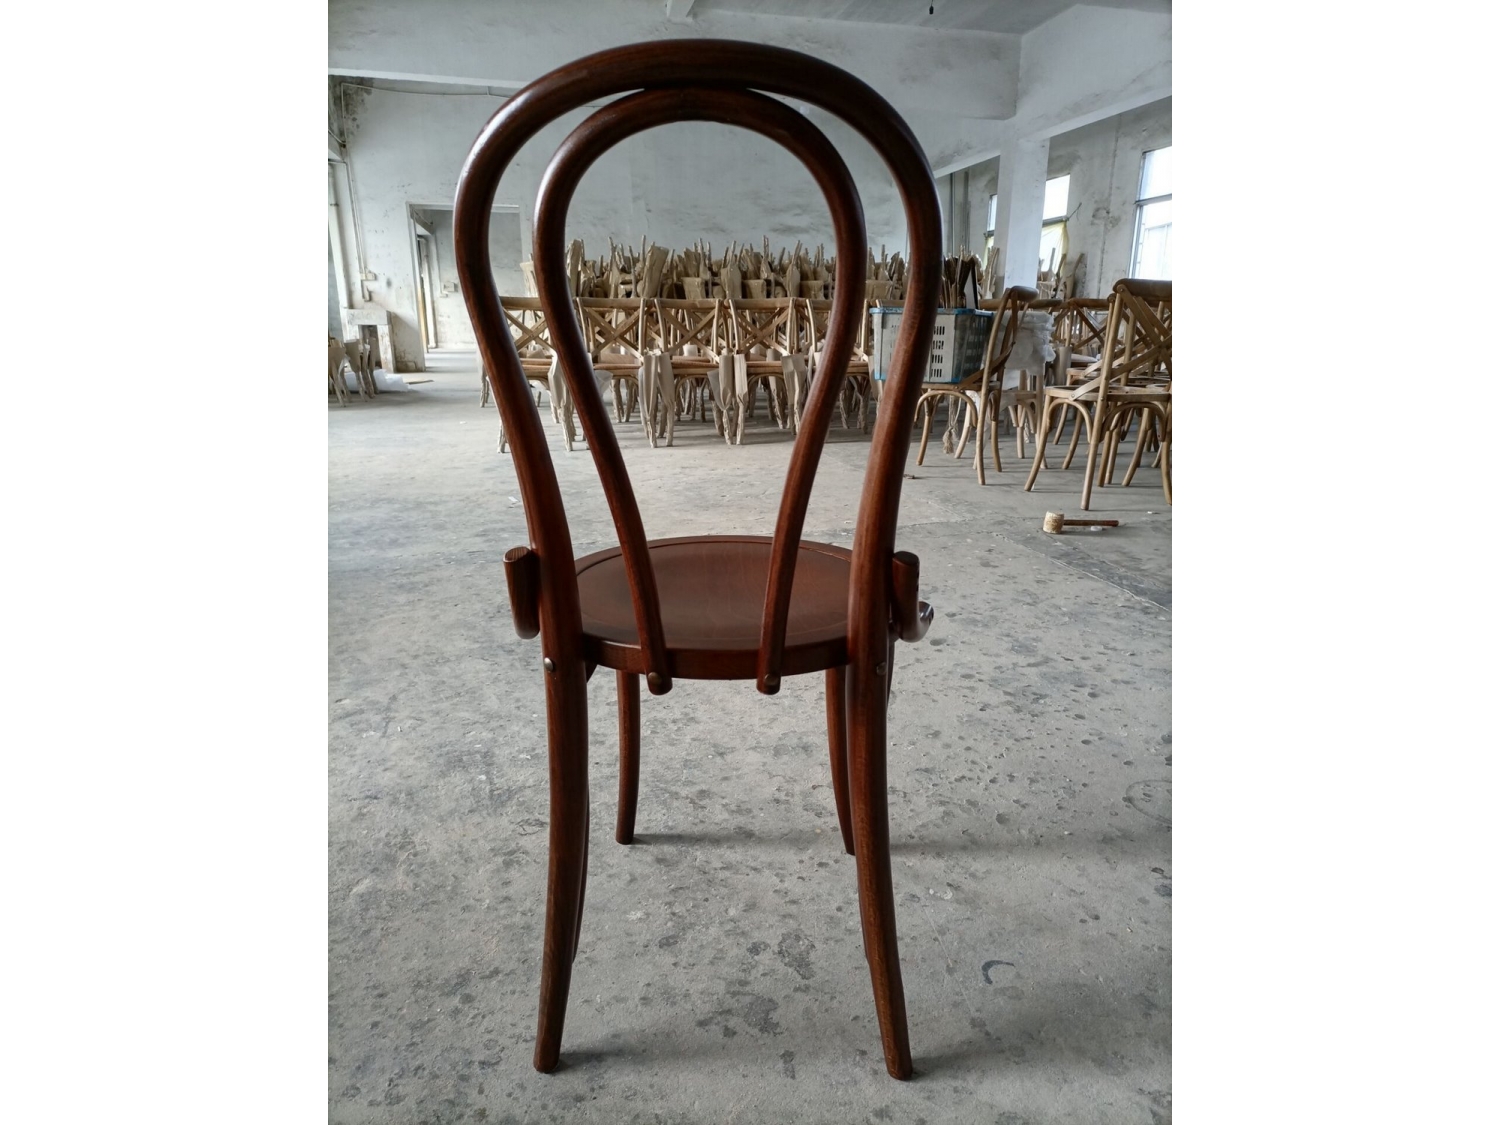 Beech wood bar stool chair